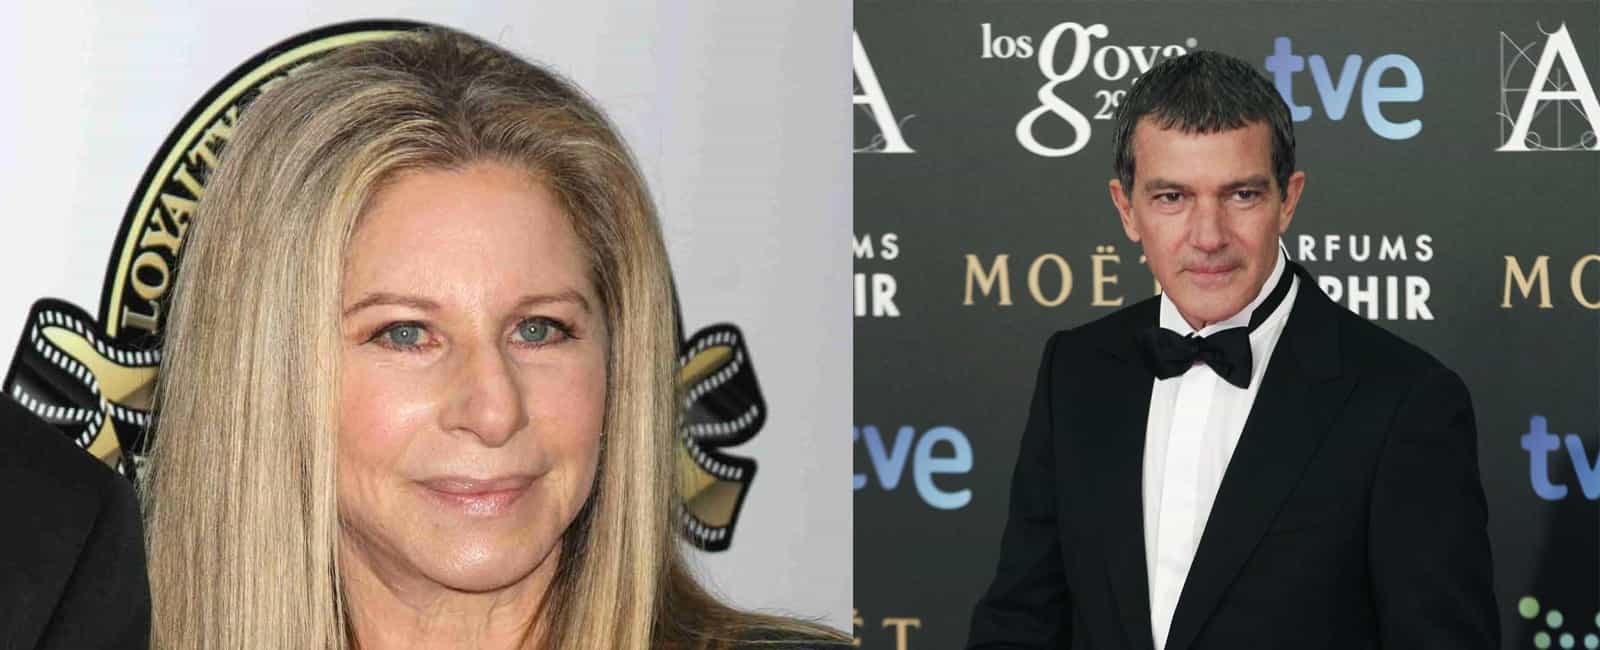 Barbra Streisand y Antonio Banderas cantan juntos, “